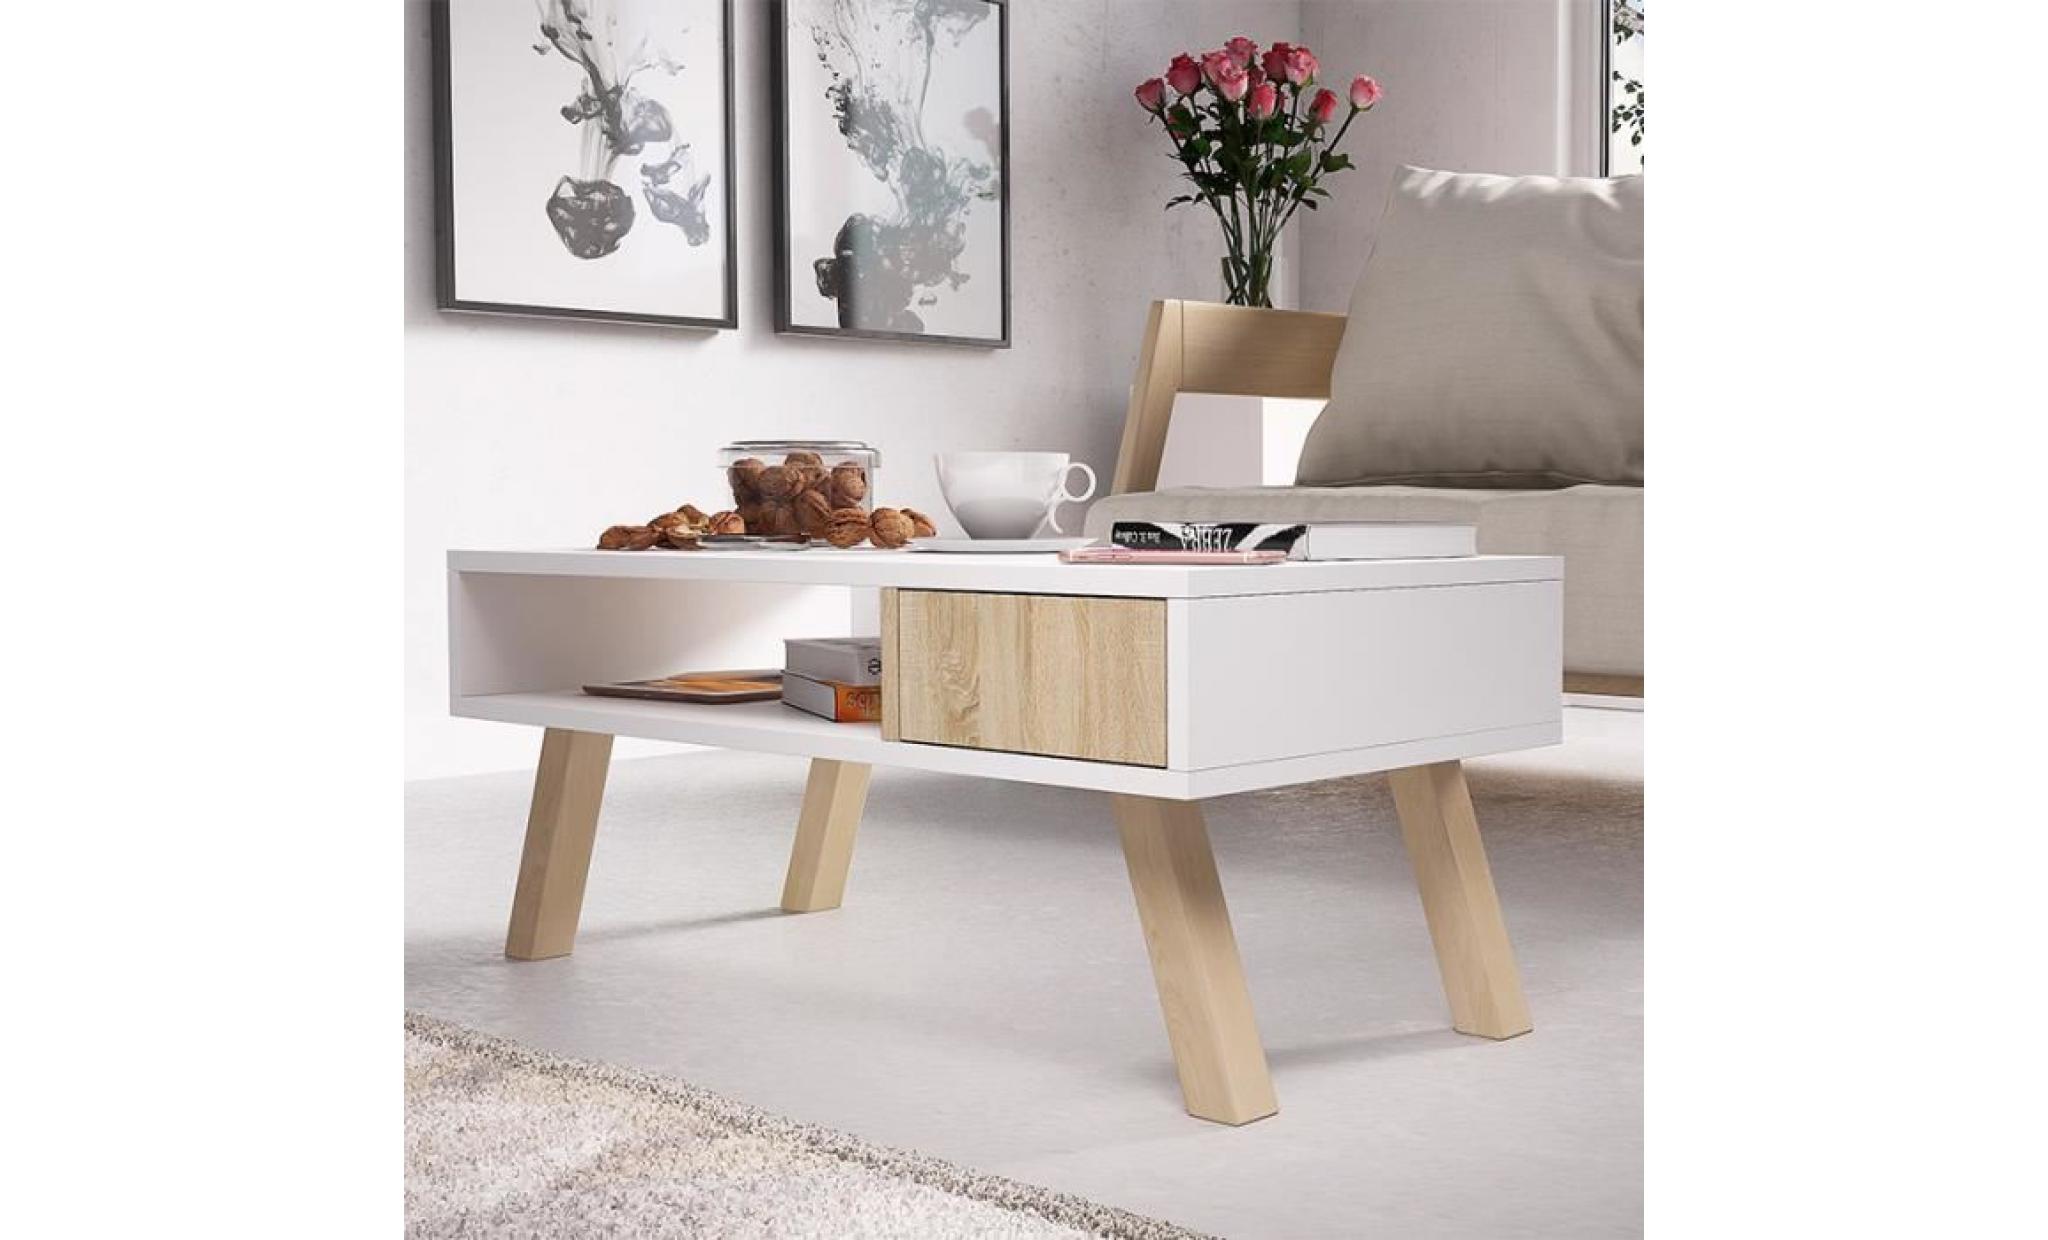 table basse scandinave / table basse bois   vero bois   80 cm   blanc mat / effet chêne   style scandinave   style nordique pas cher